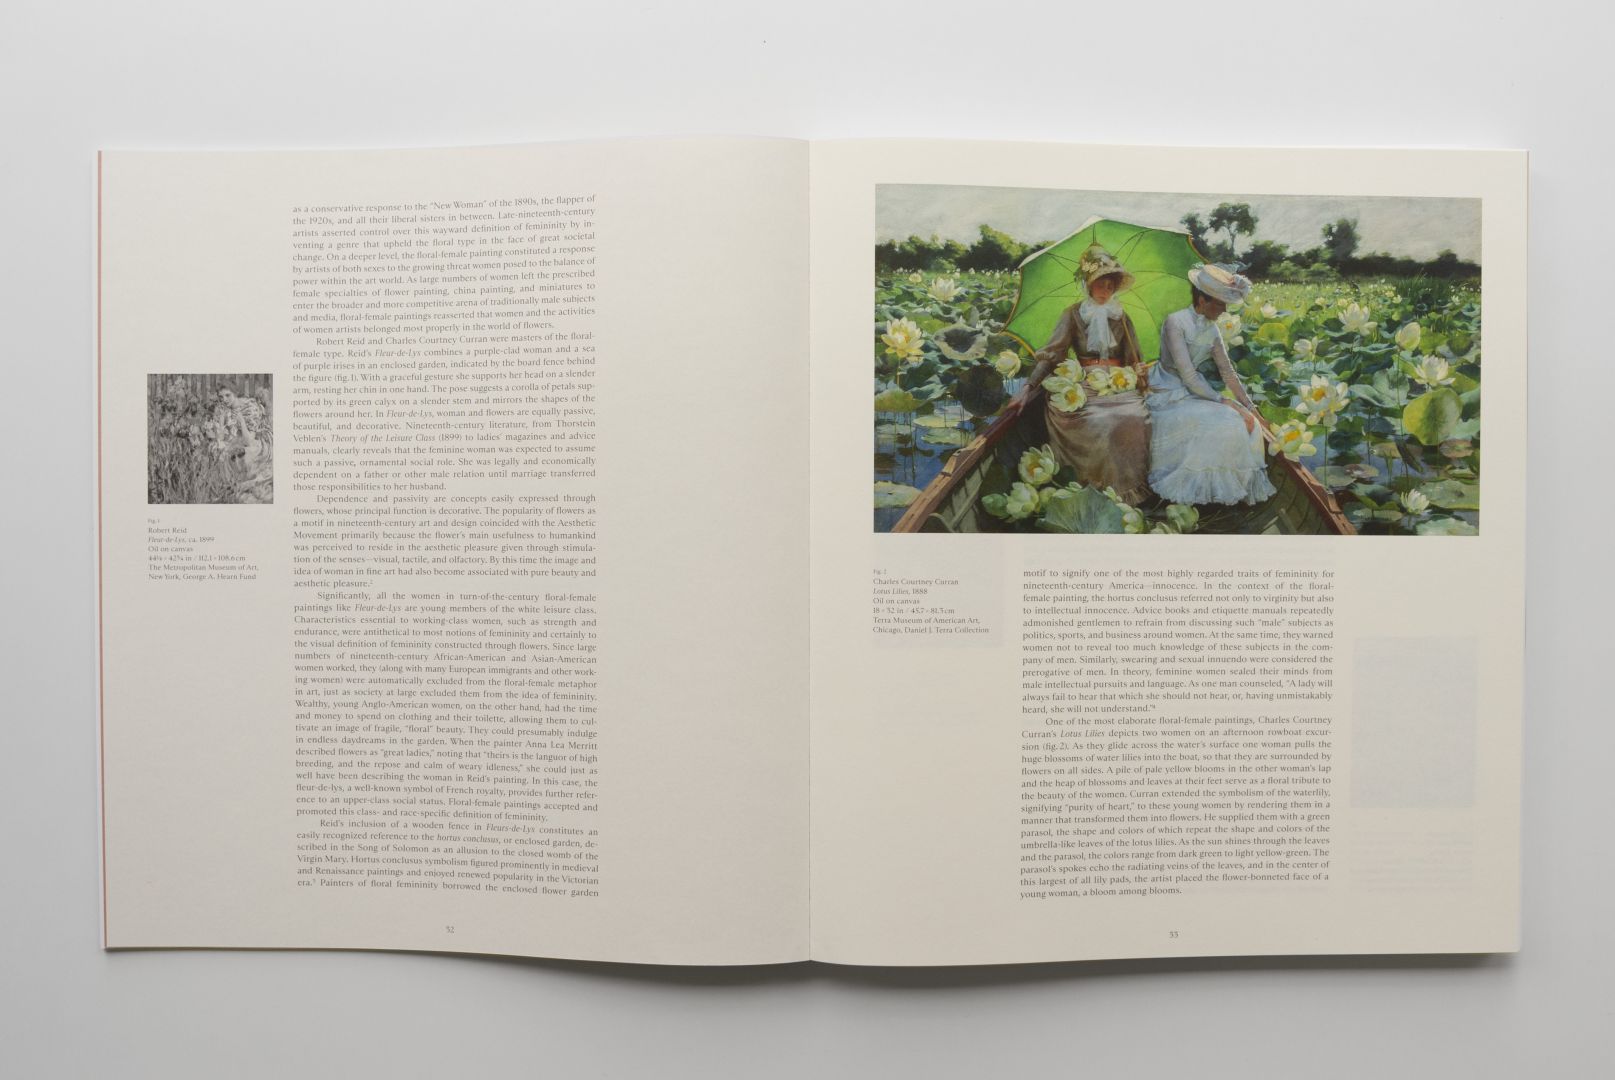 Erik Madigan Heck - The Language of Flowers No. 2, 2021